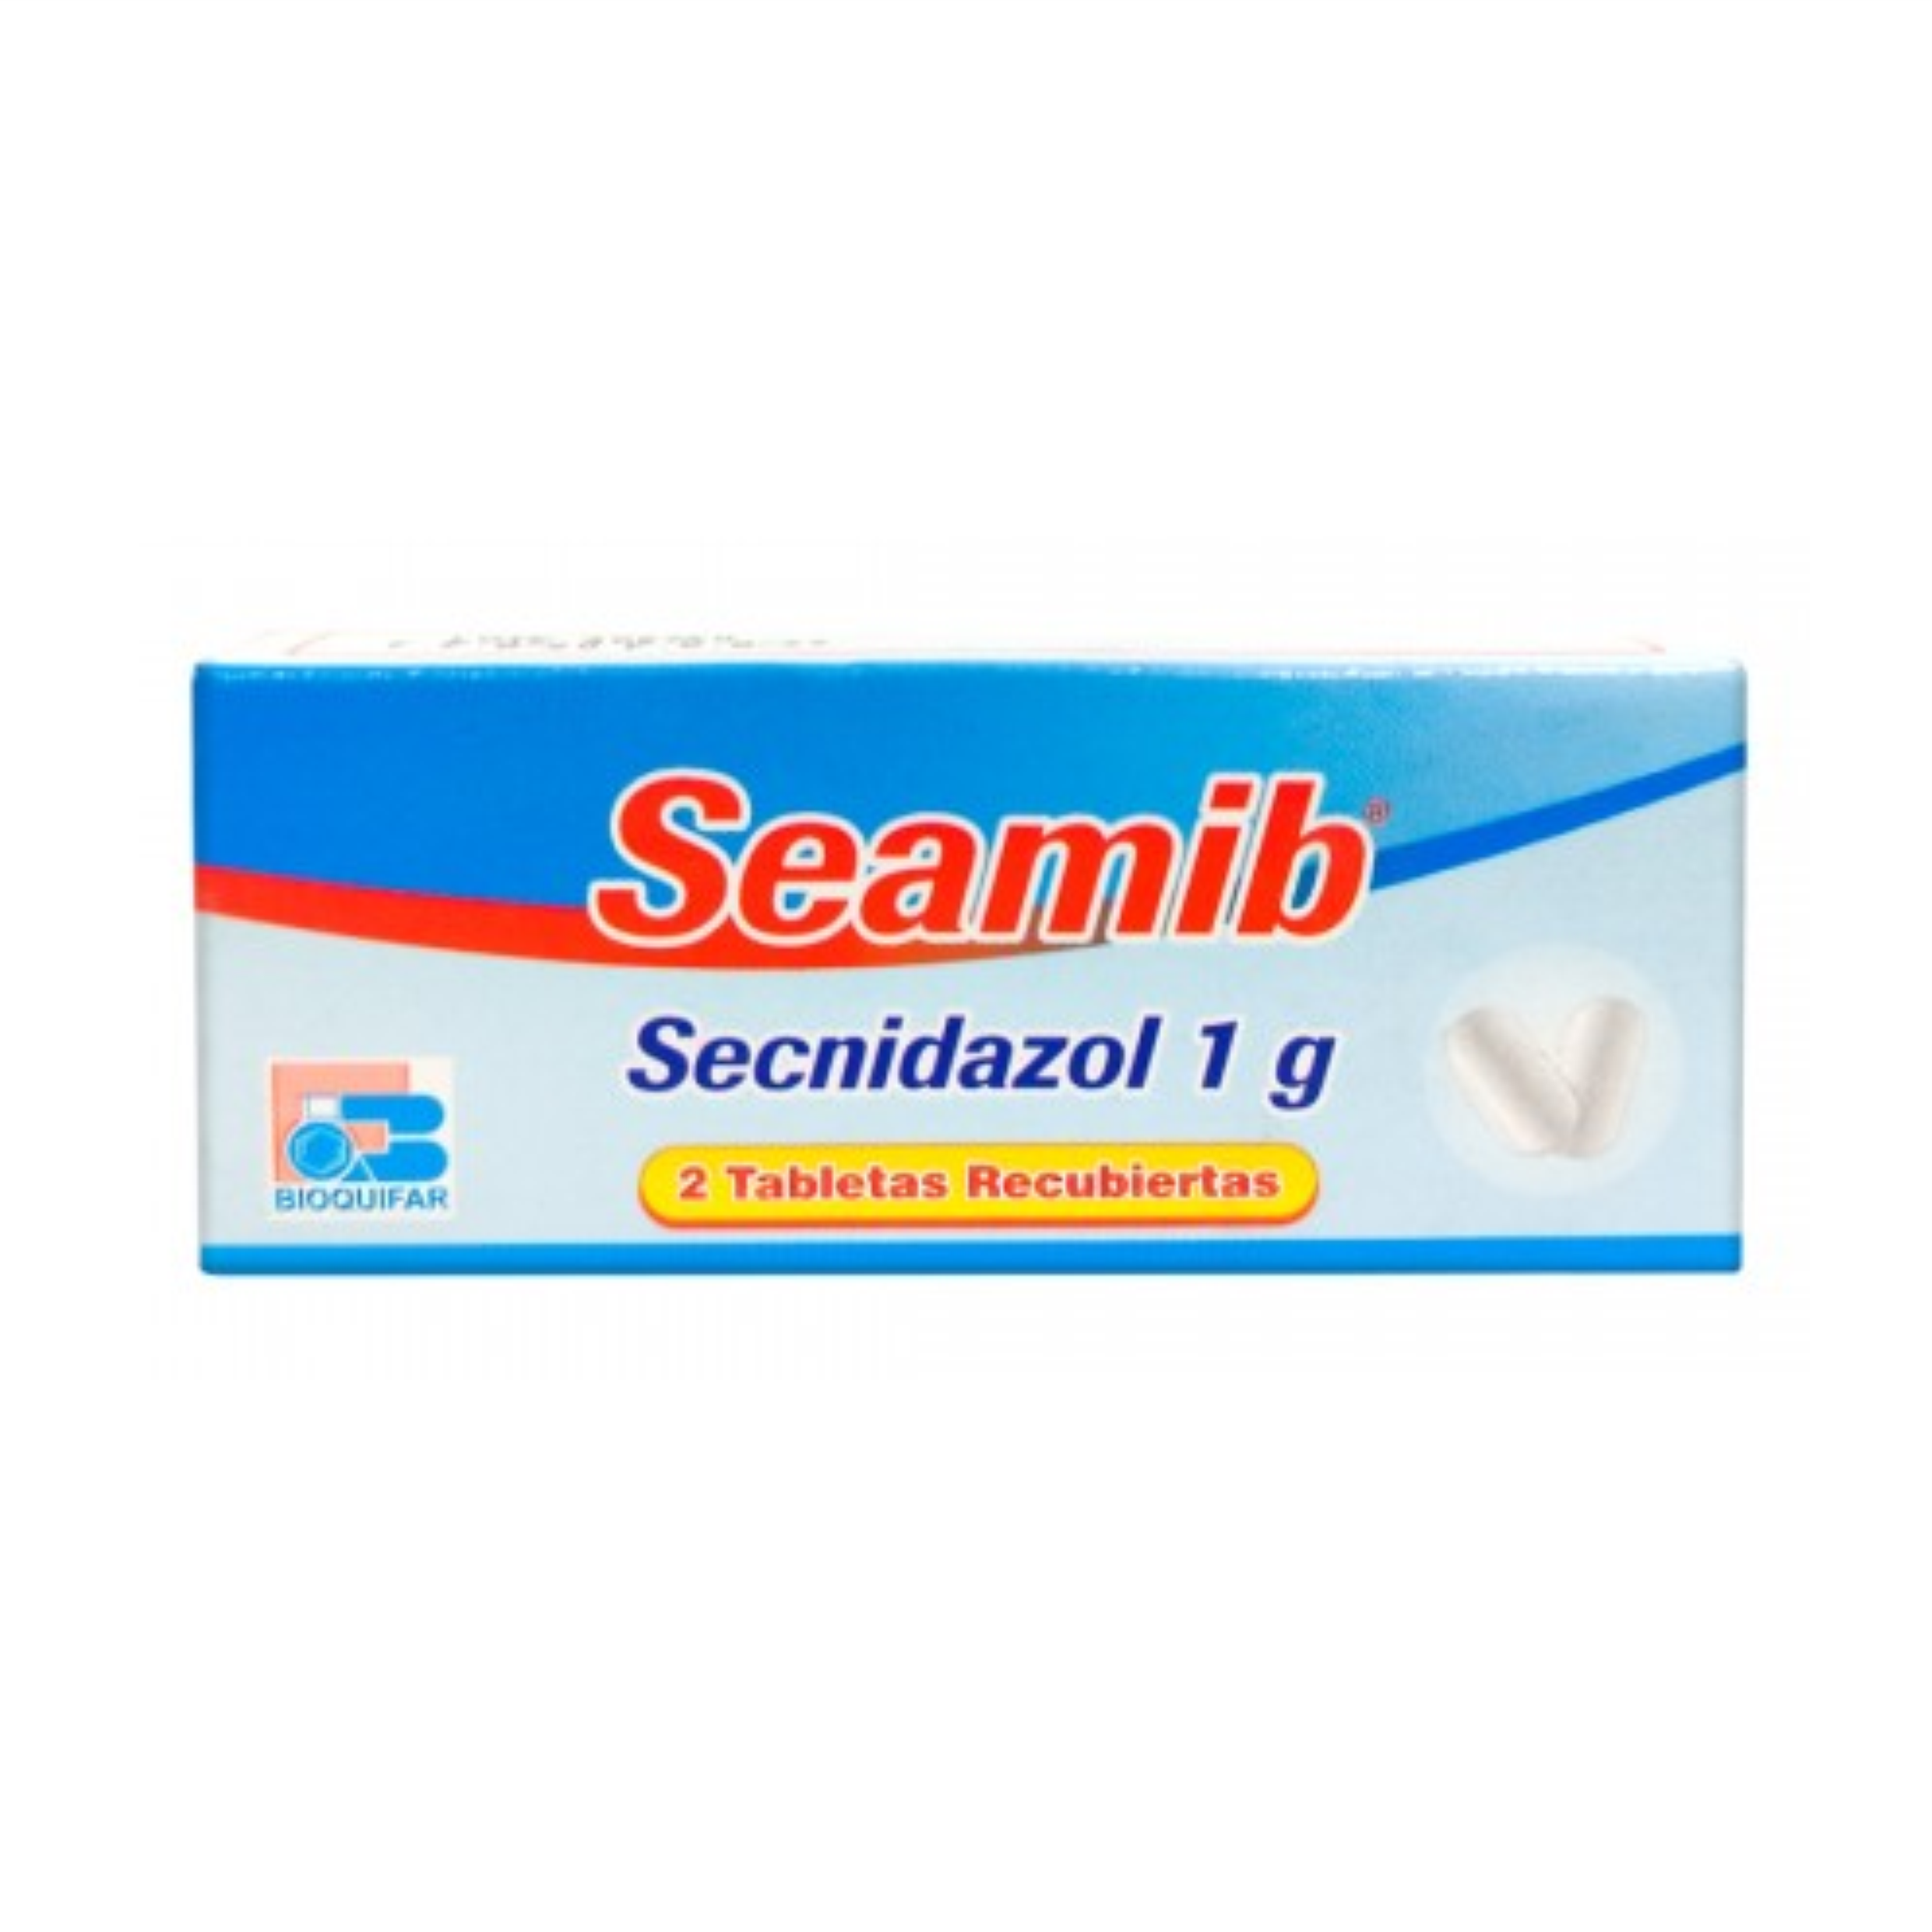 Seamib 1g Caja x 2 Tabletas Recubiertas